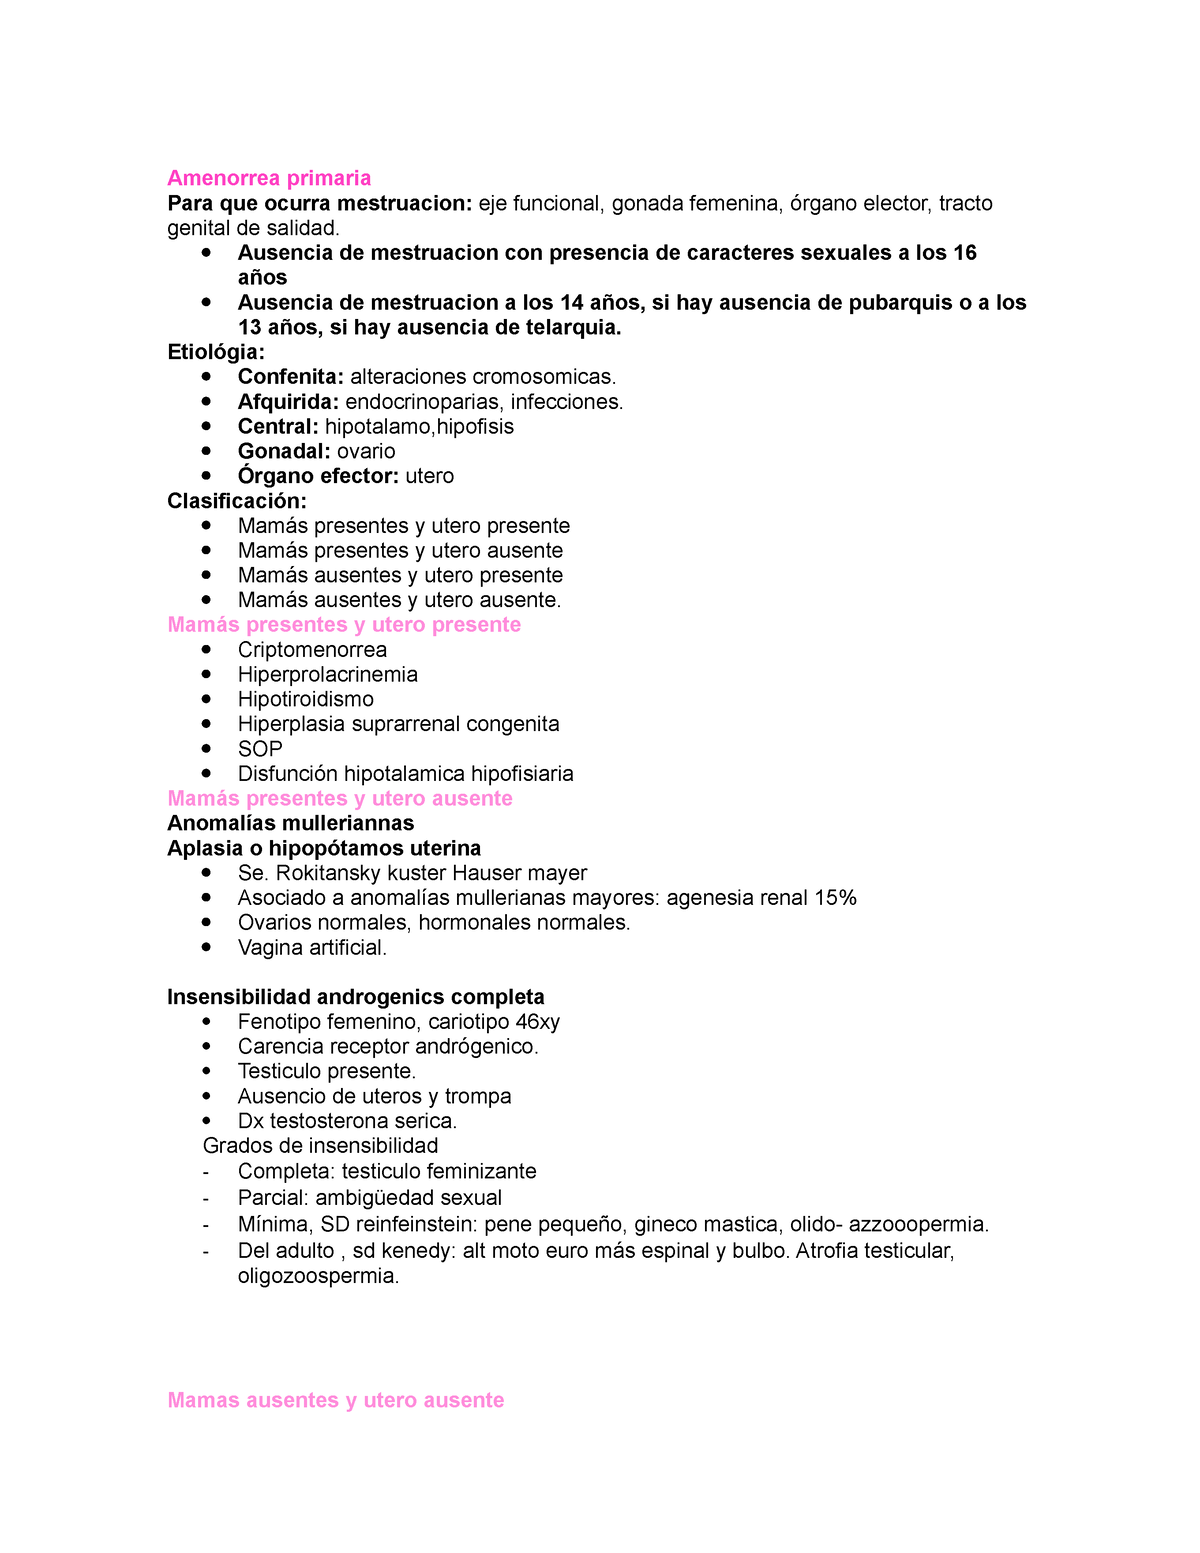 Amenorrea Primaria Apuntes De Ginecología Y Obstetricia Amenorrea Primaria Para Que Ocurra 7015